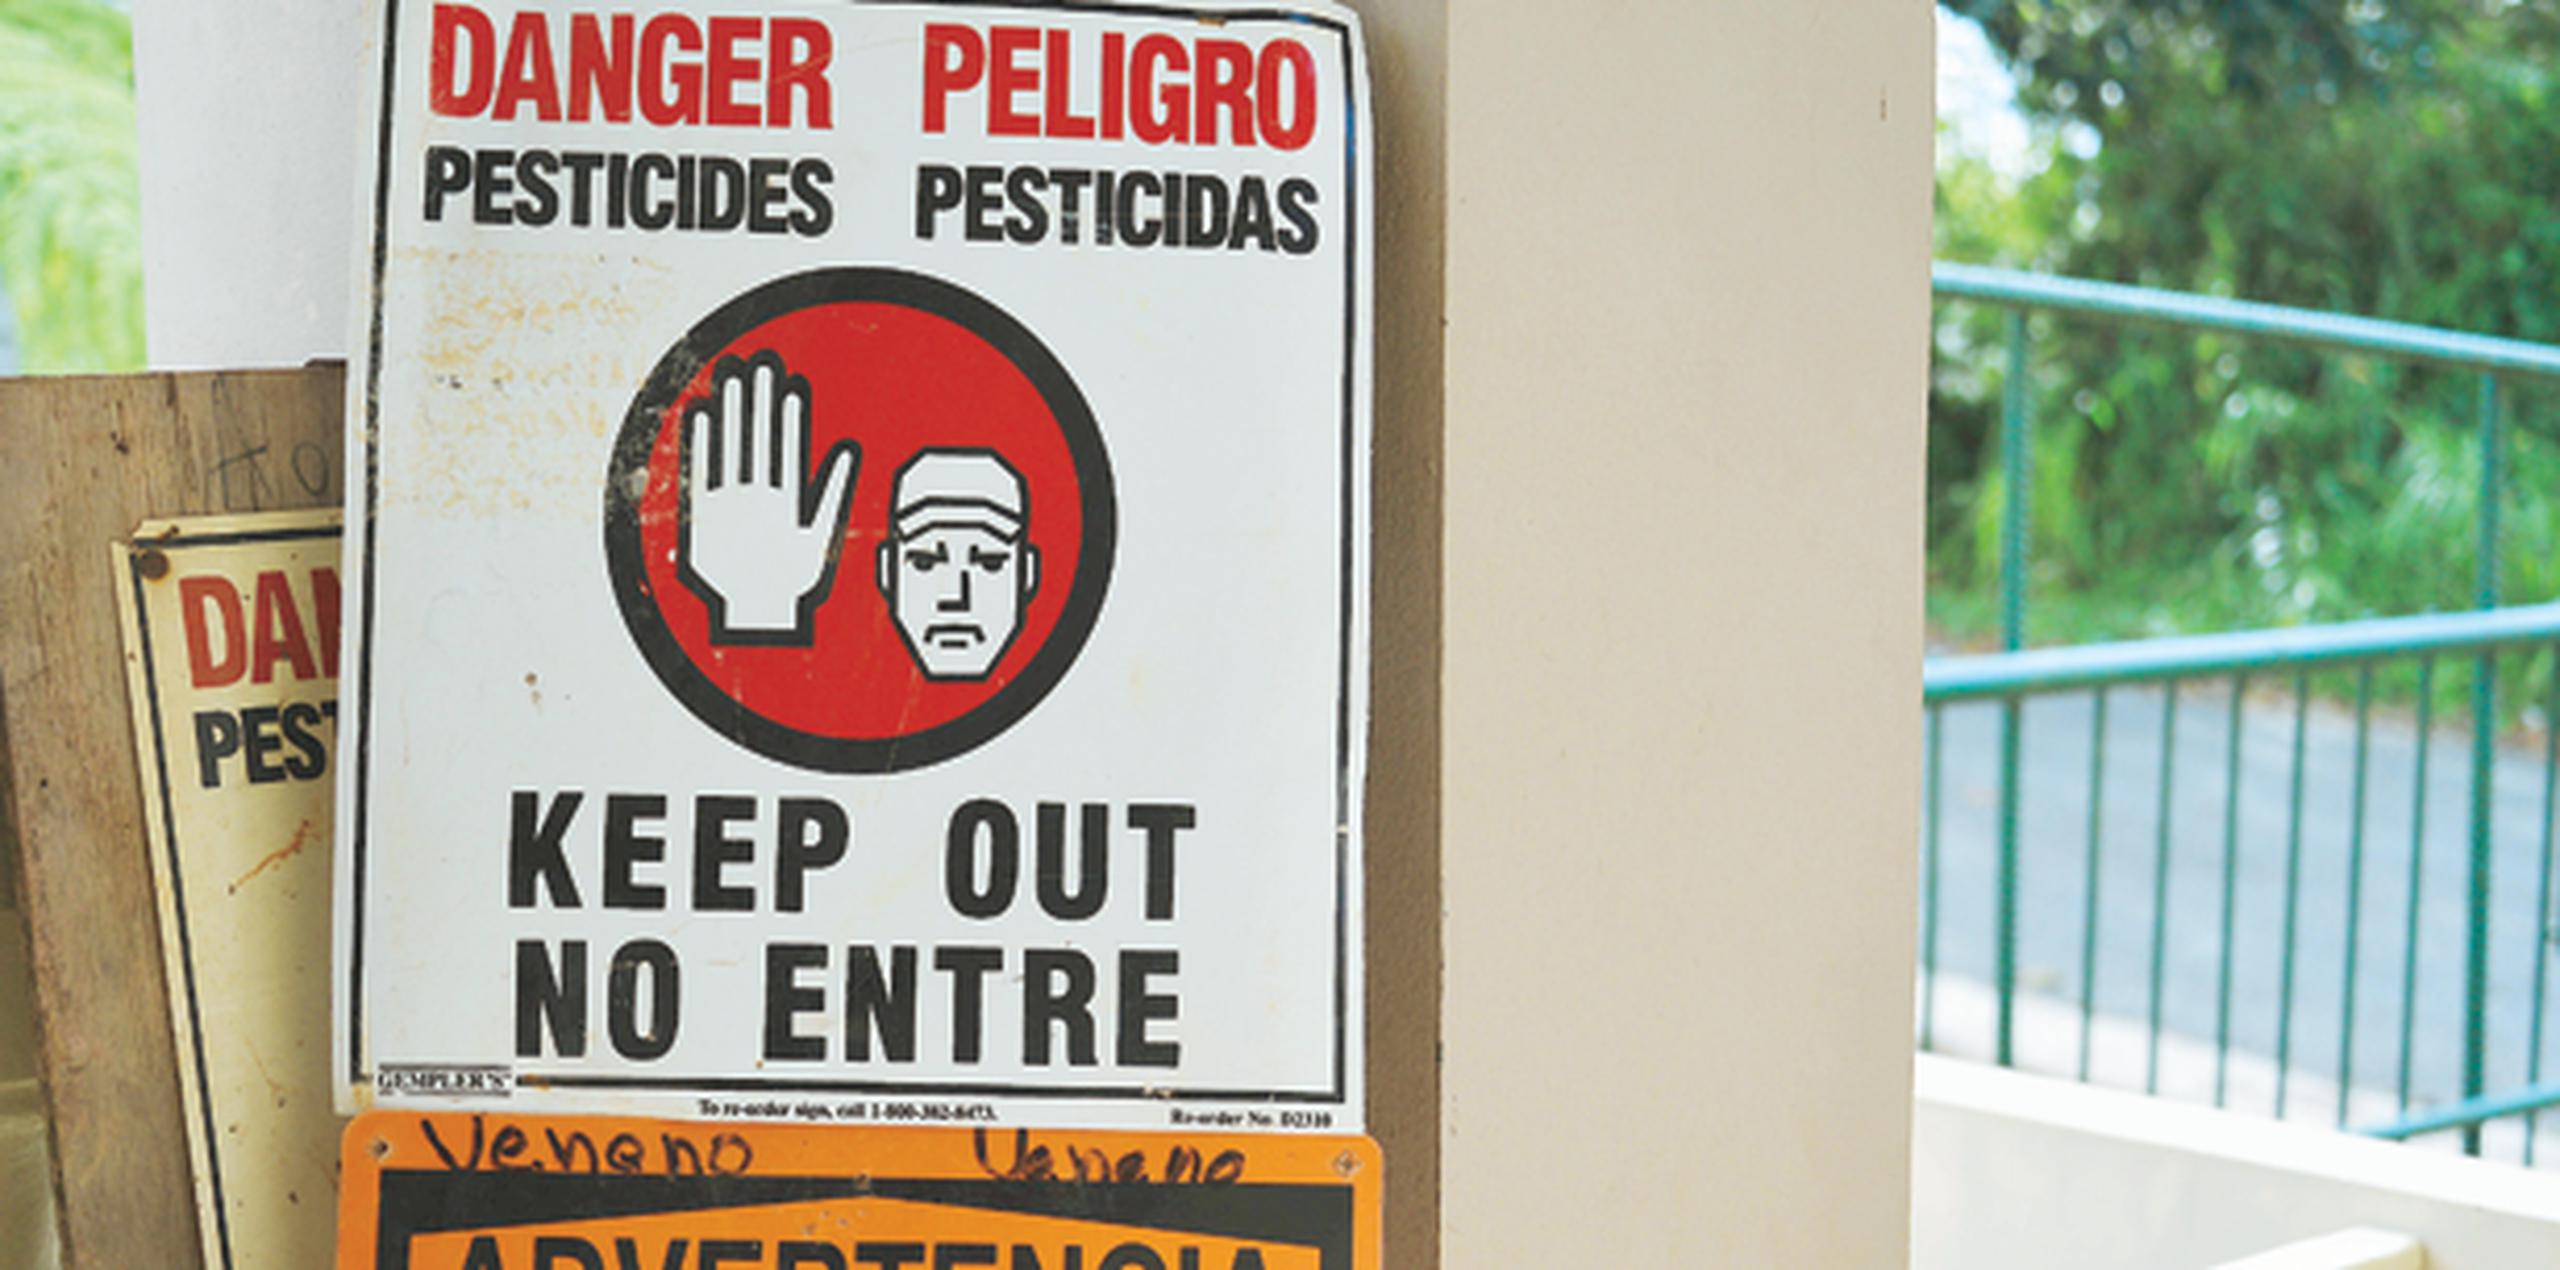 La responsable regional de la EPA, Judith Enck, dijo que junto al Departamento de Agricultura de Puerto Rico descubrieron al menos varios ejemplos más de uso de químicos prohibidos en hoteles. (Archivo)